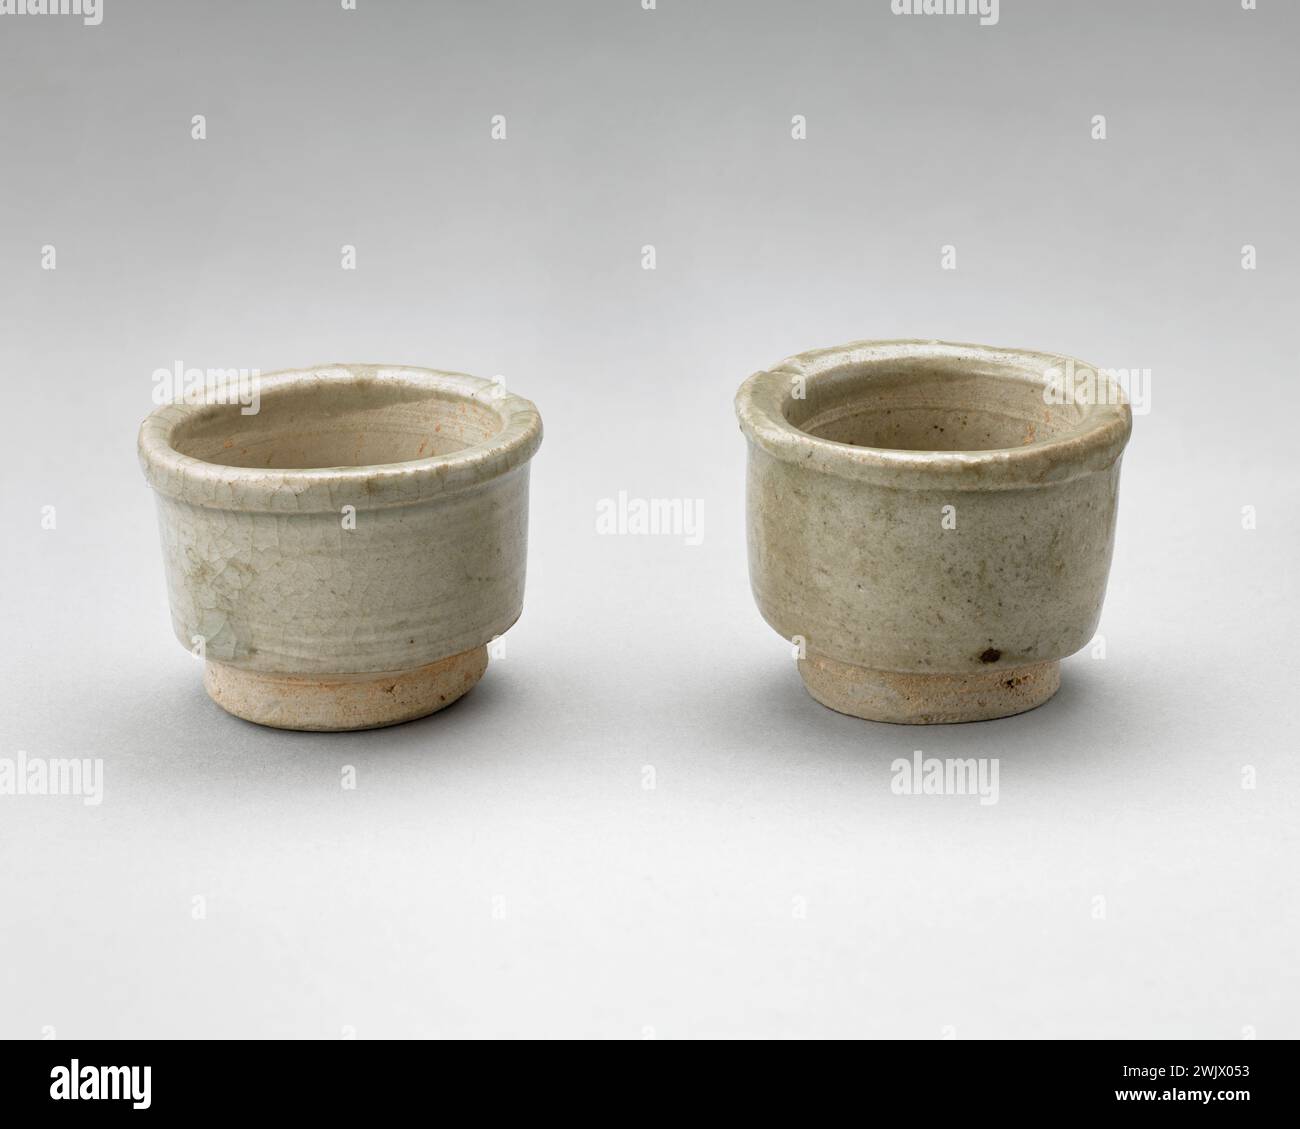 Changsha (Keramikproduktionszentrum), Paar Schnitte (gebräuchlicher Name), 0900. Cernuschi Museum, Asien Museum der Stadt Paris. Stockfoto